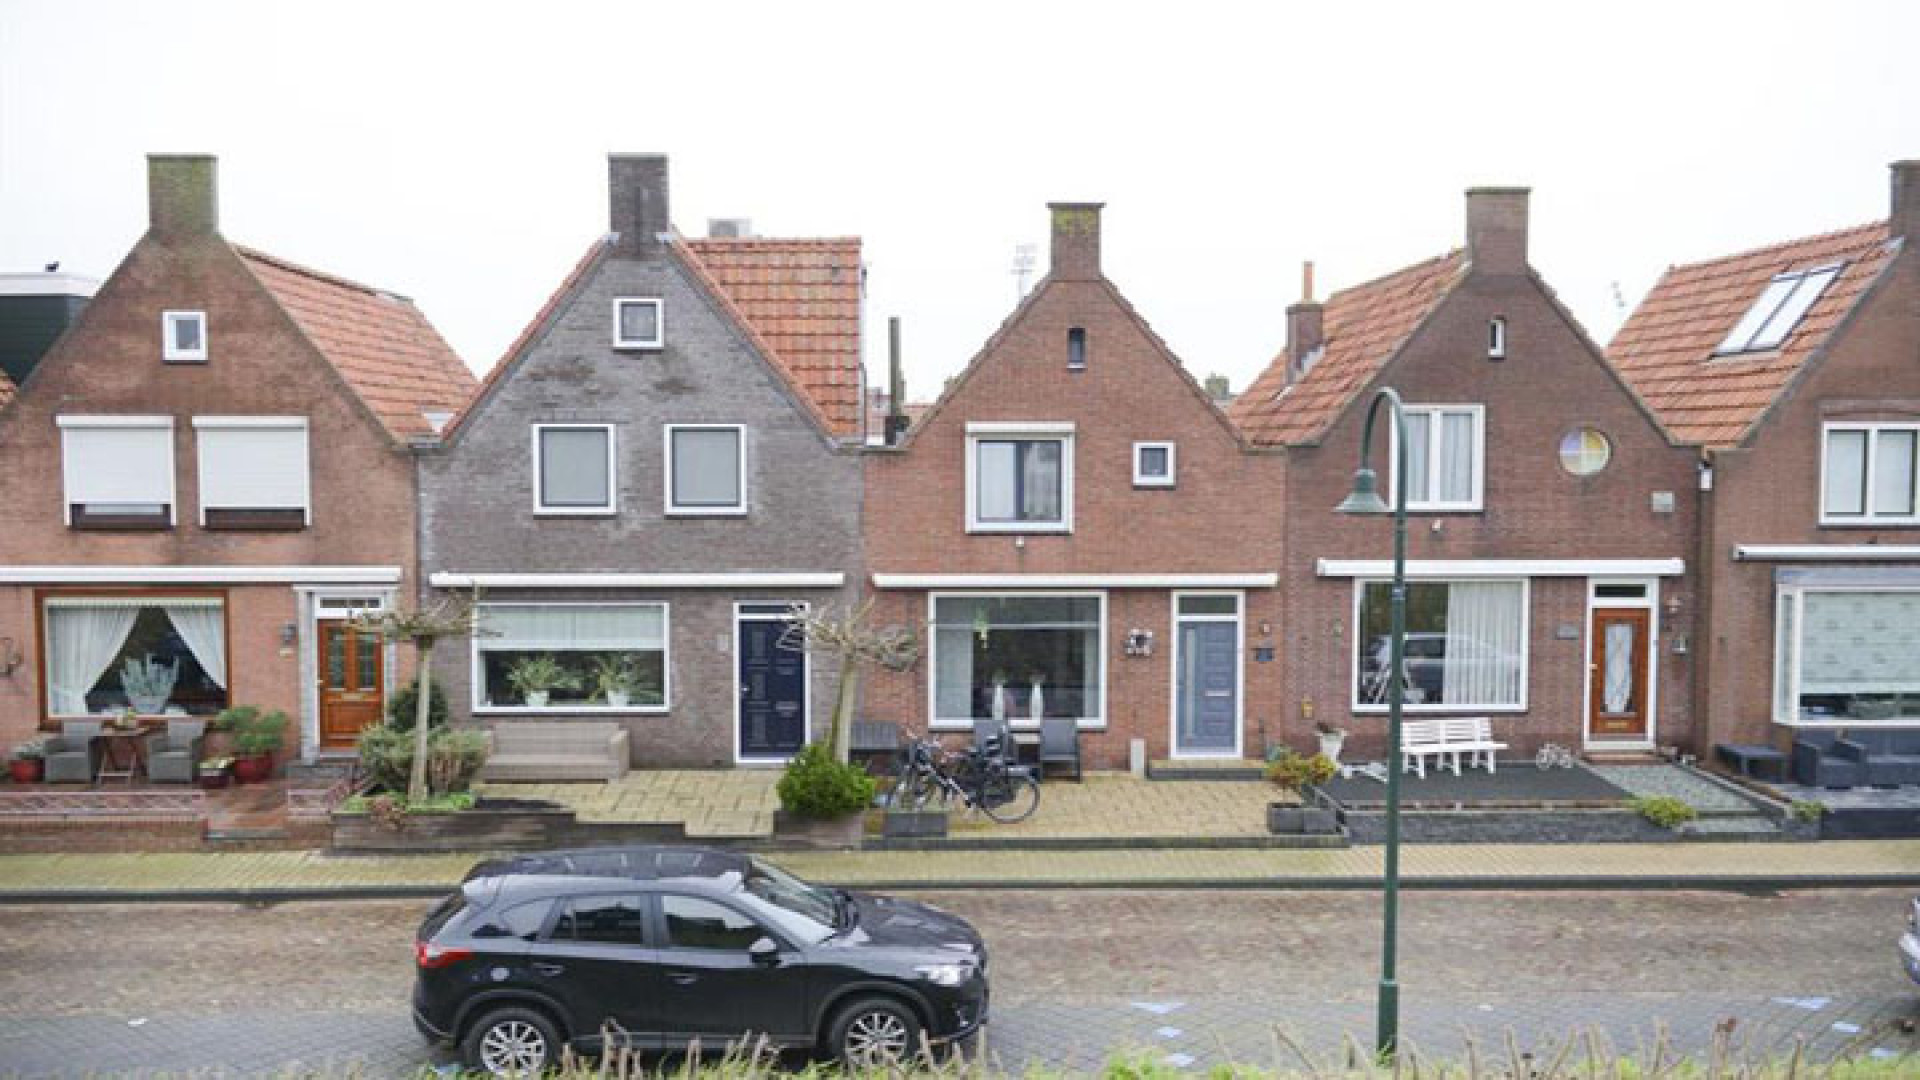 Yolanthe heeft haar Volendamse dijkwoning tegen dramatisch lage prijs verkocht. Zie foto's 22